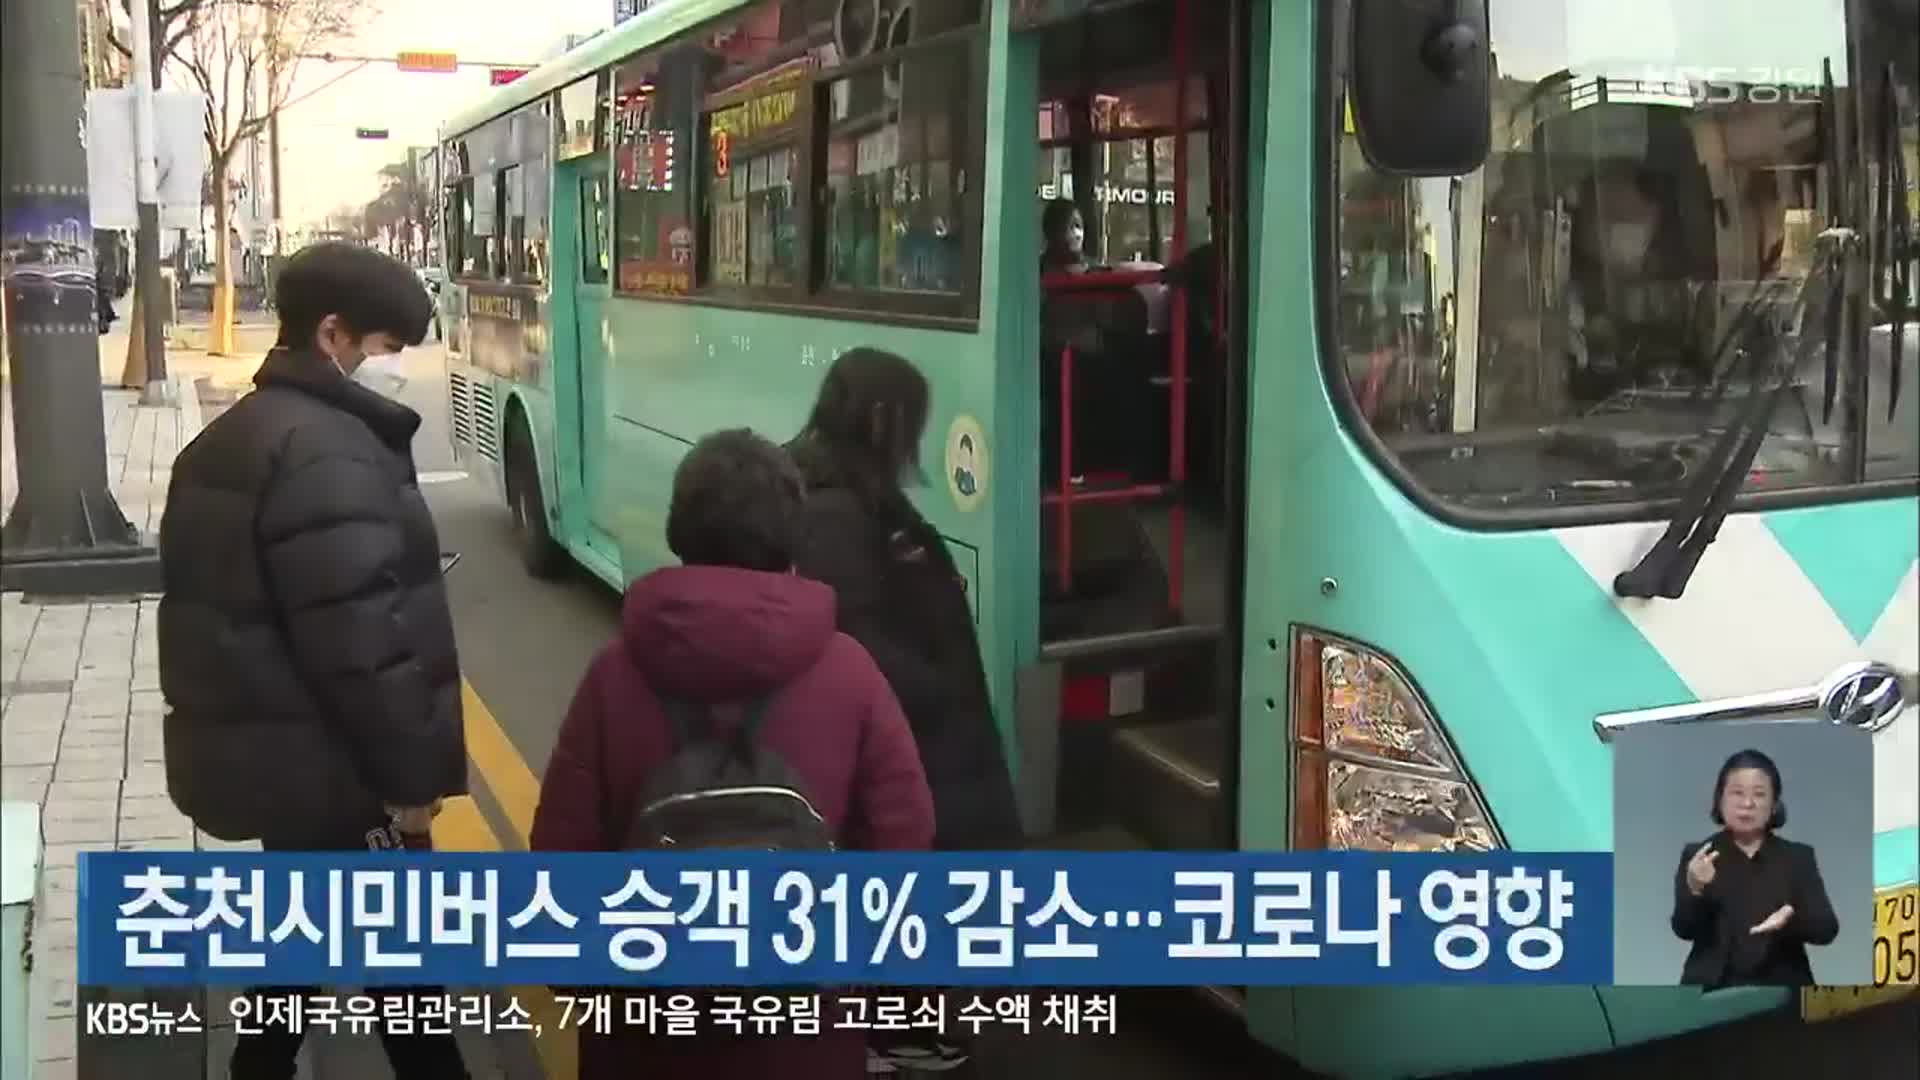 춘천시민버스 승객 31% 감소…코로나19 영향